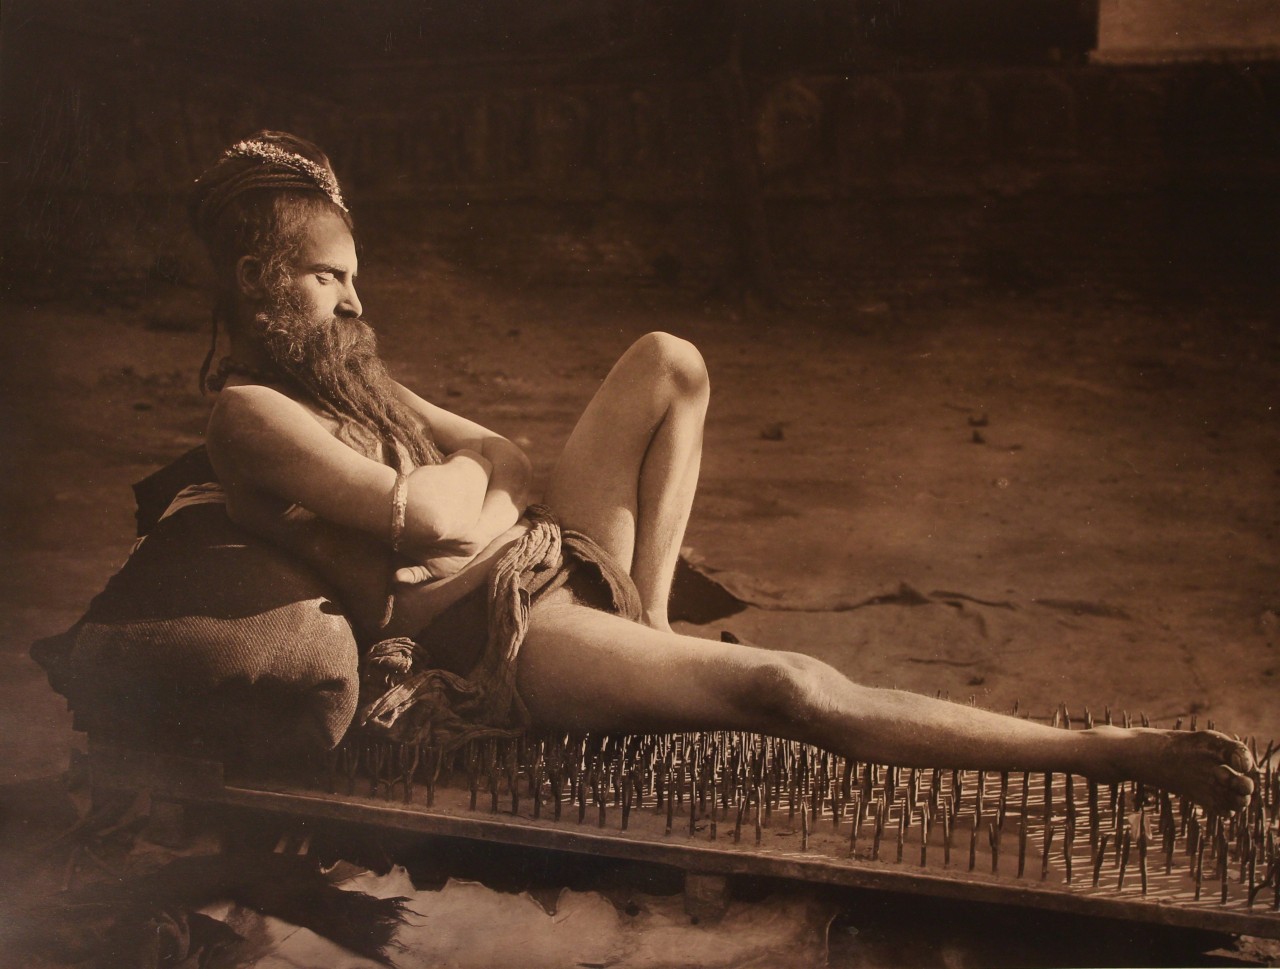 Факир отдыхает на гвоздях, примерно 1910 год